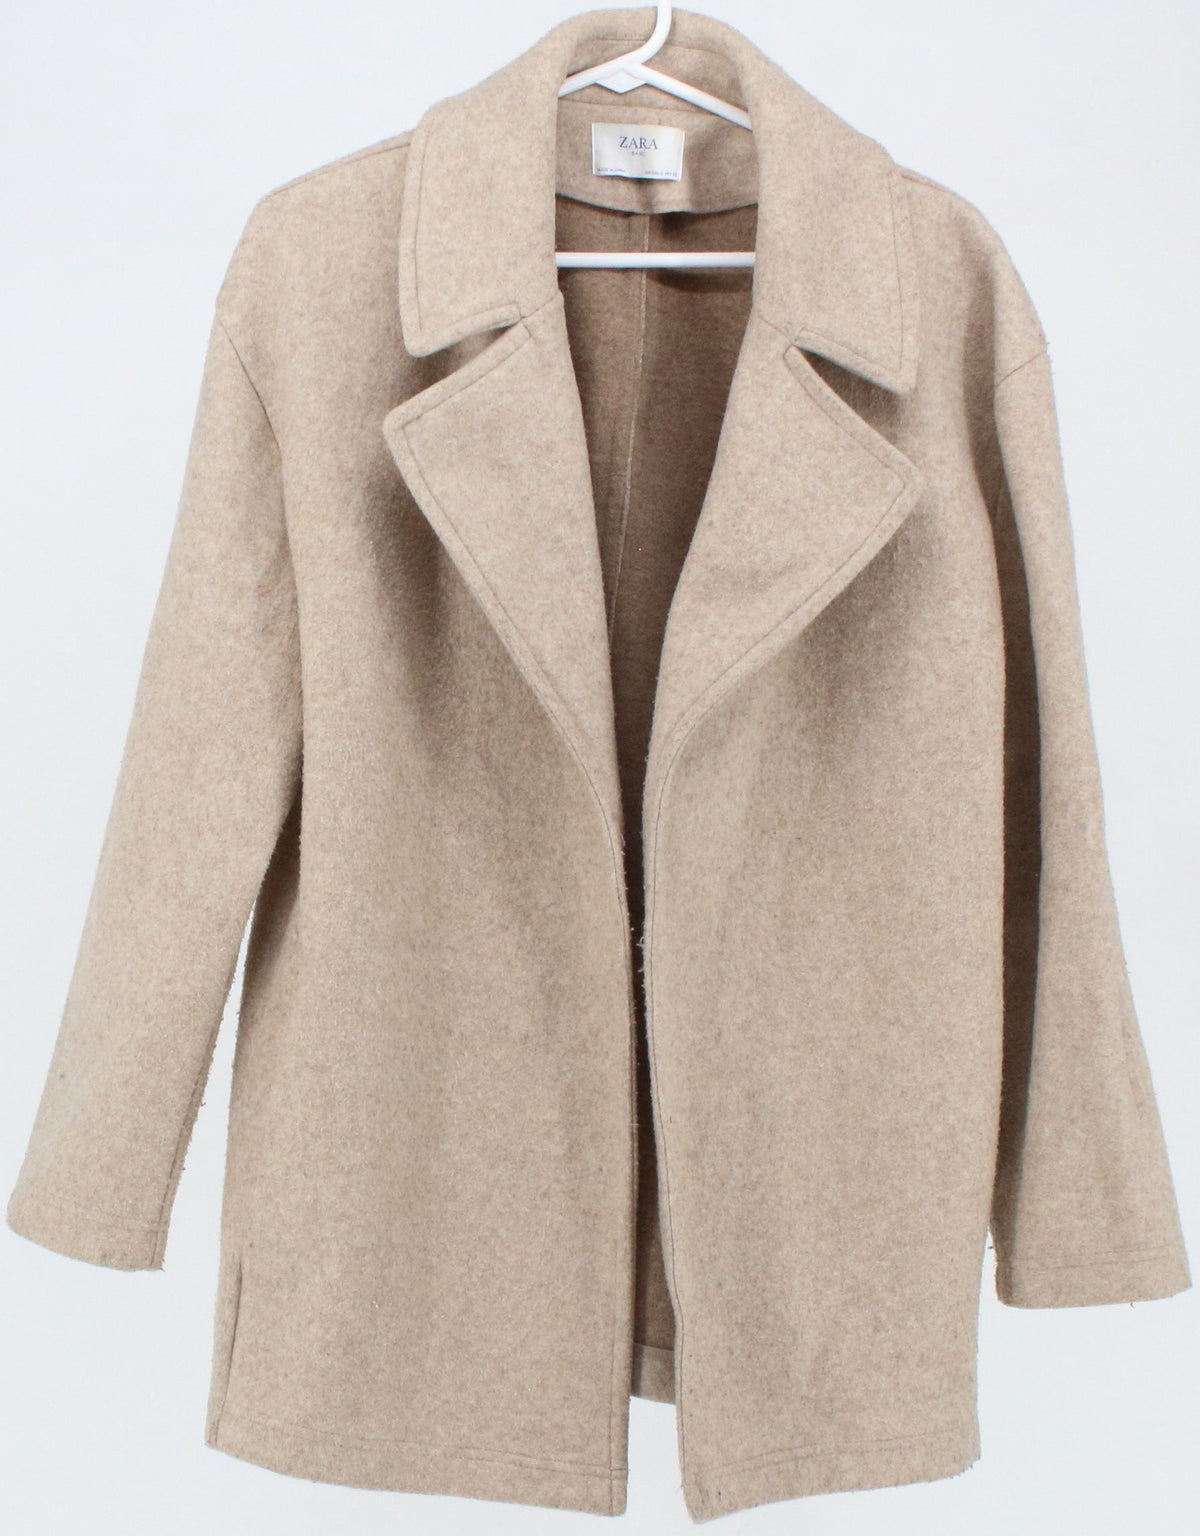 Zara Basic Beige Open Front Women's Coat